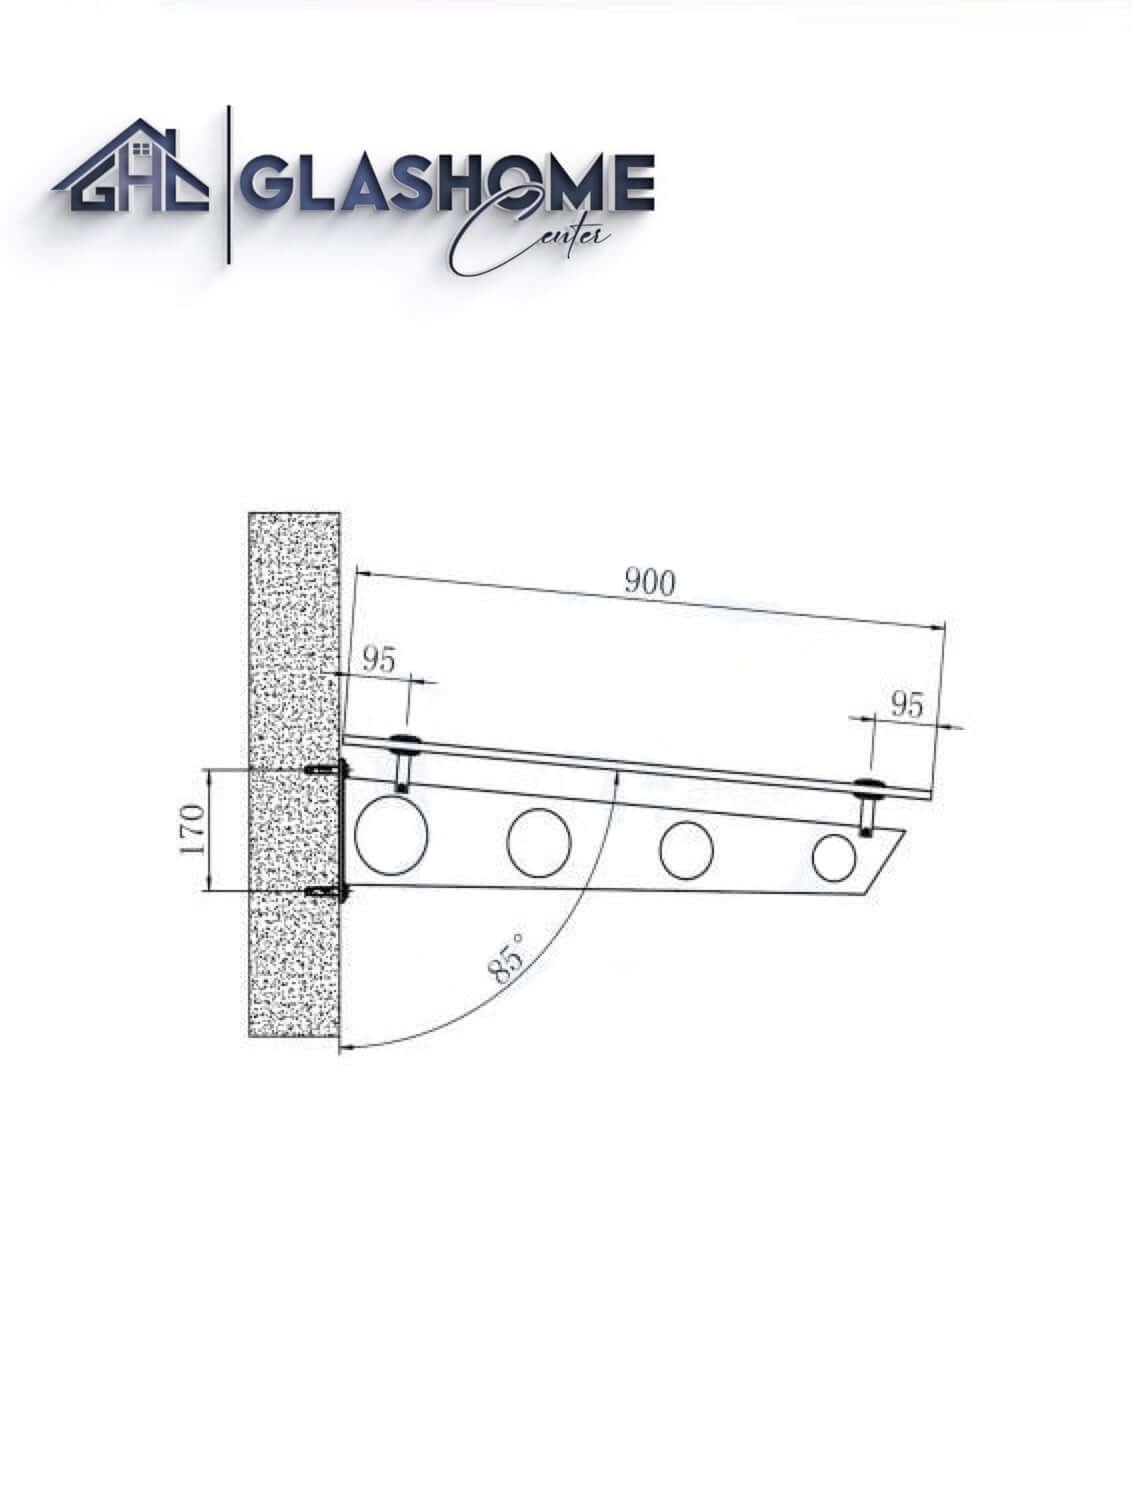 GlasHomeCenter - Glasvordach - Milchglas - 200x90cm - 13,1mm VSG - incl. 3 varianti Edelstahlhalterungen nere "Stoccolma"